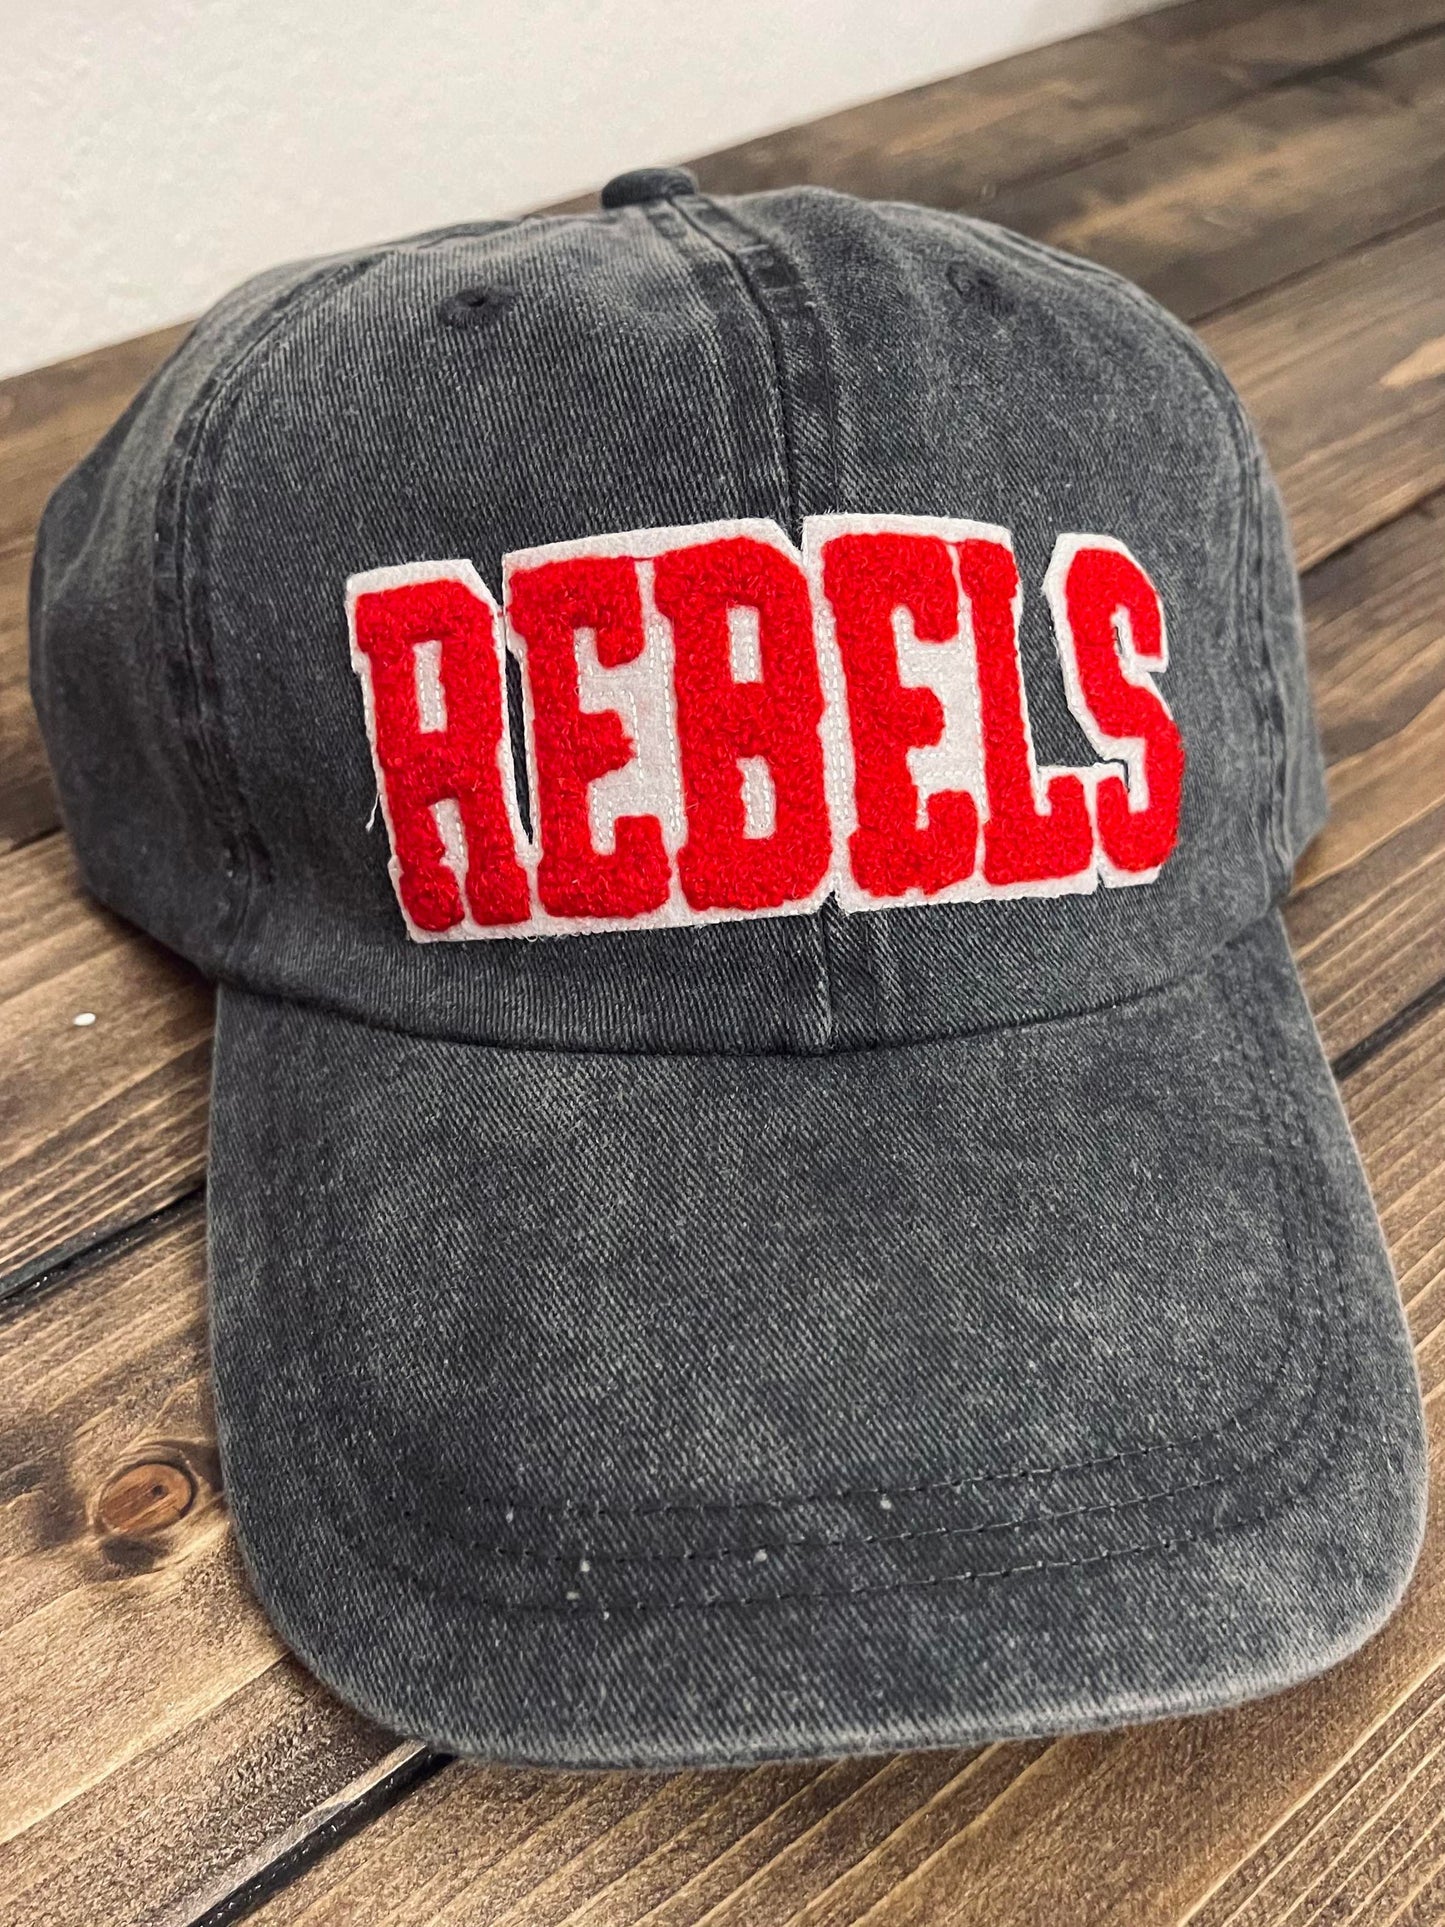 REBELS - Vintage Chenille Patch Cap